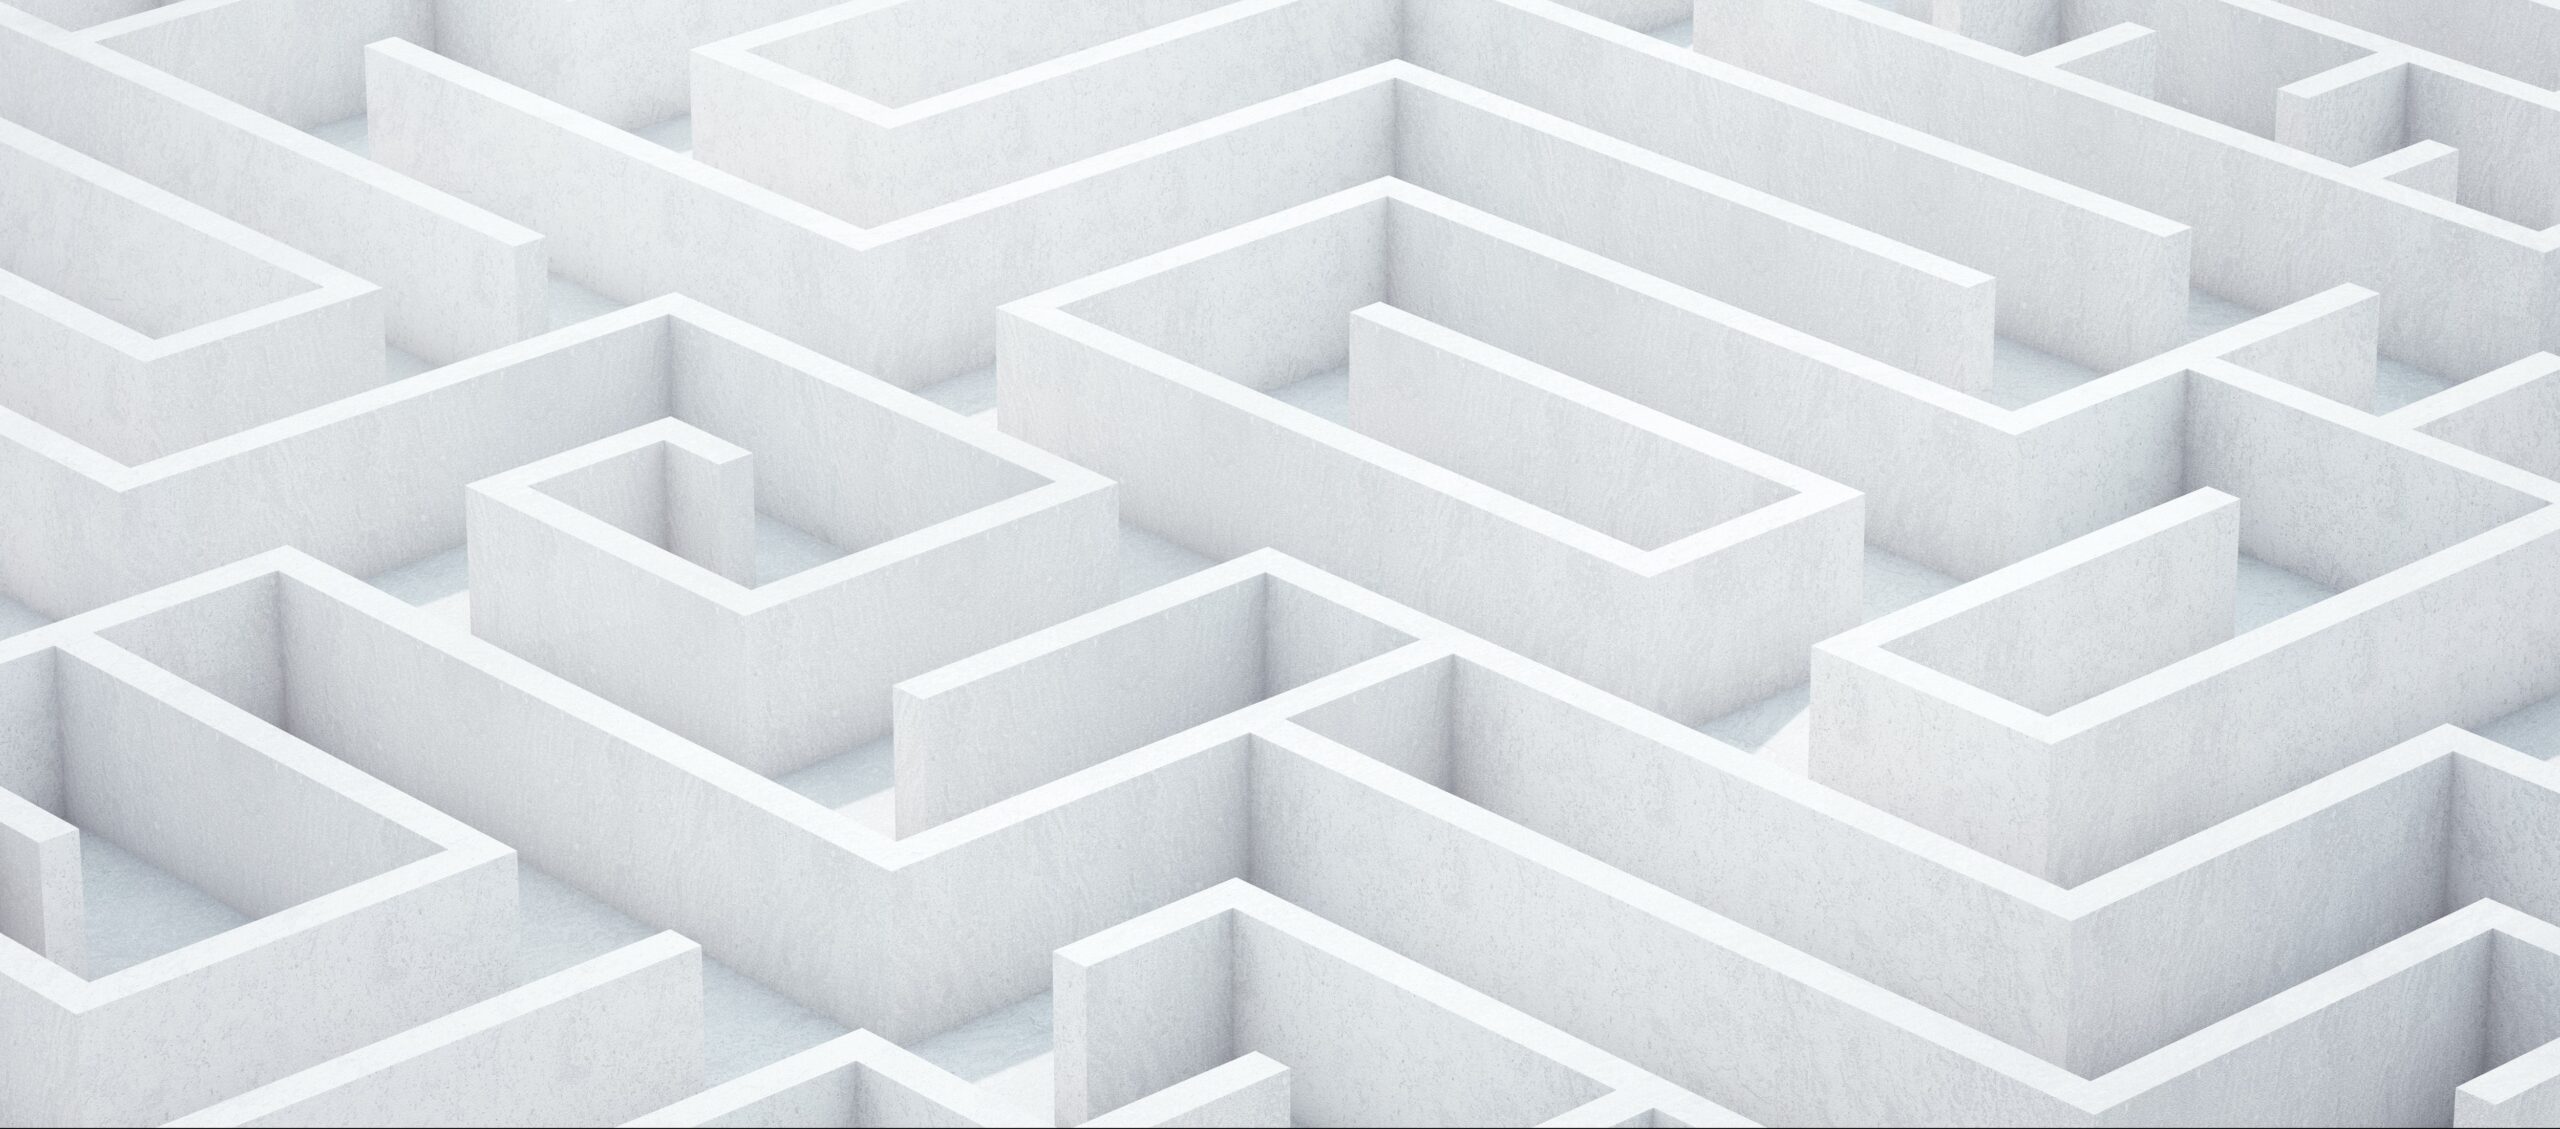 white maze on a white background